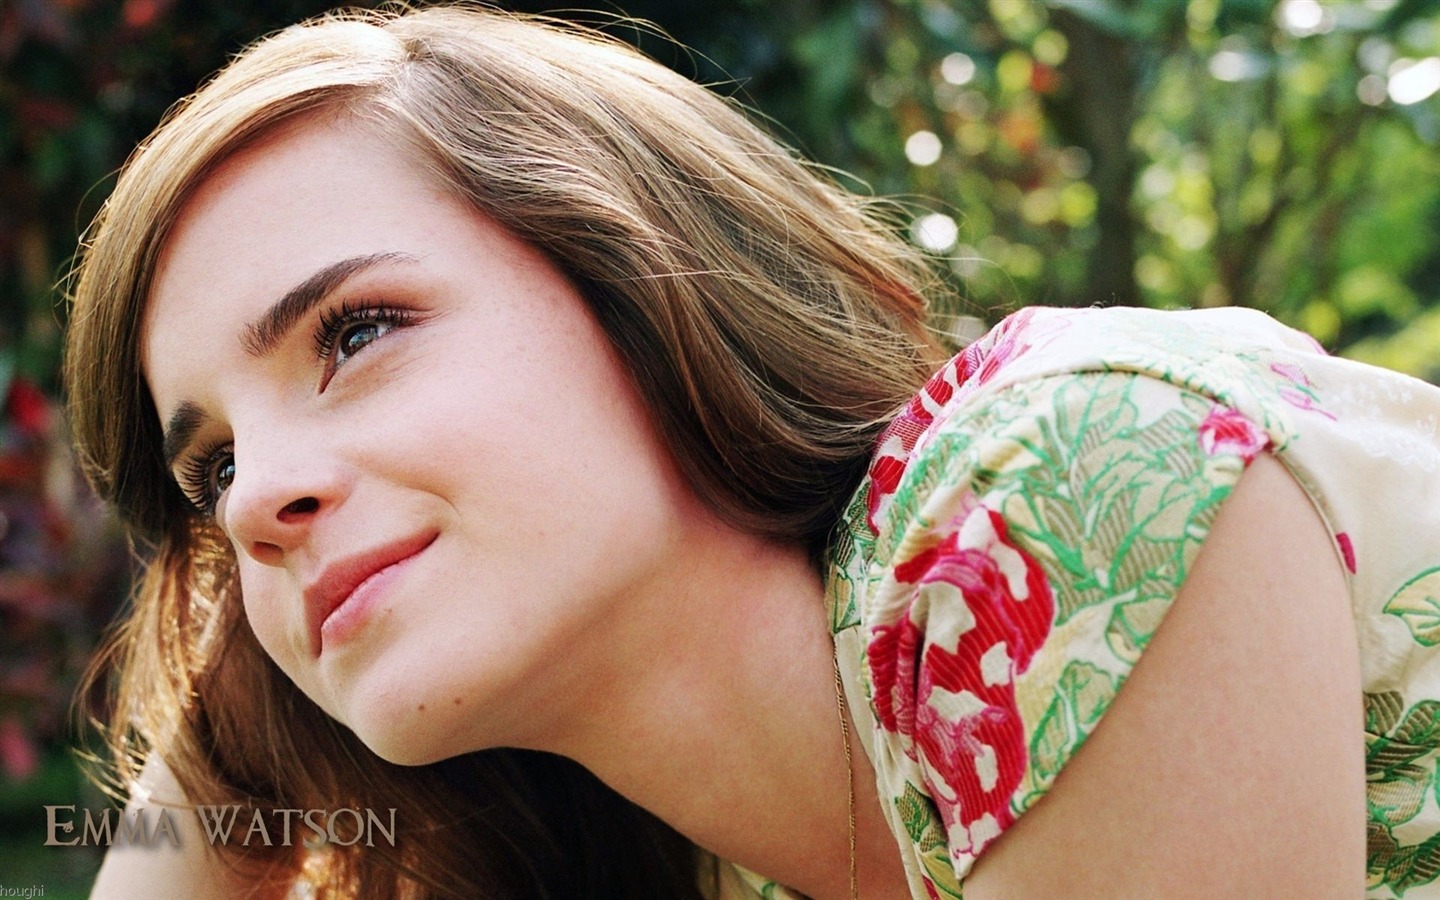 Emma Watson 艾玛·沃特森 美女壁纸26 - 1440x900